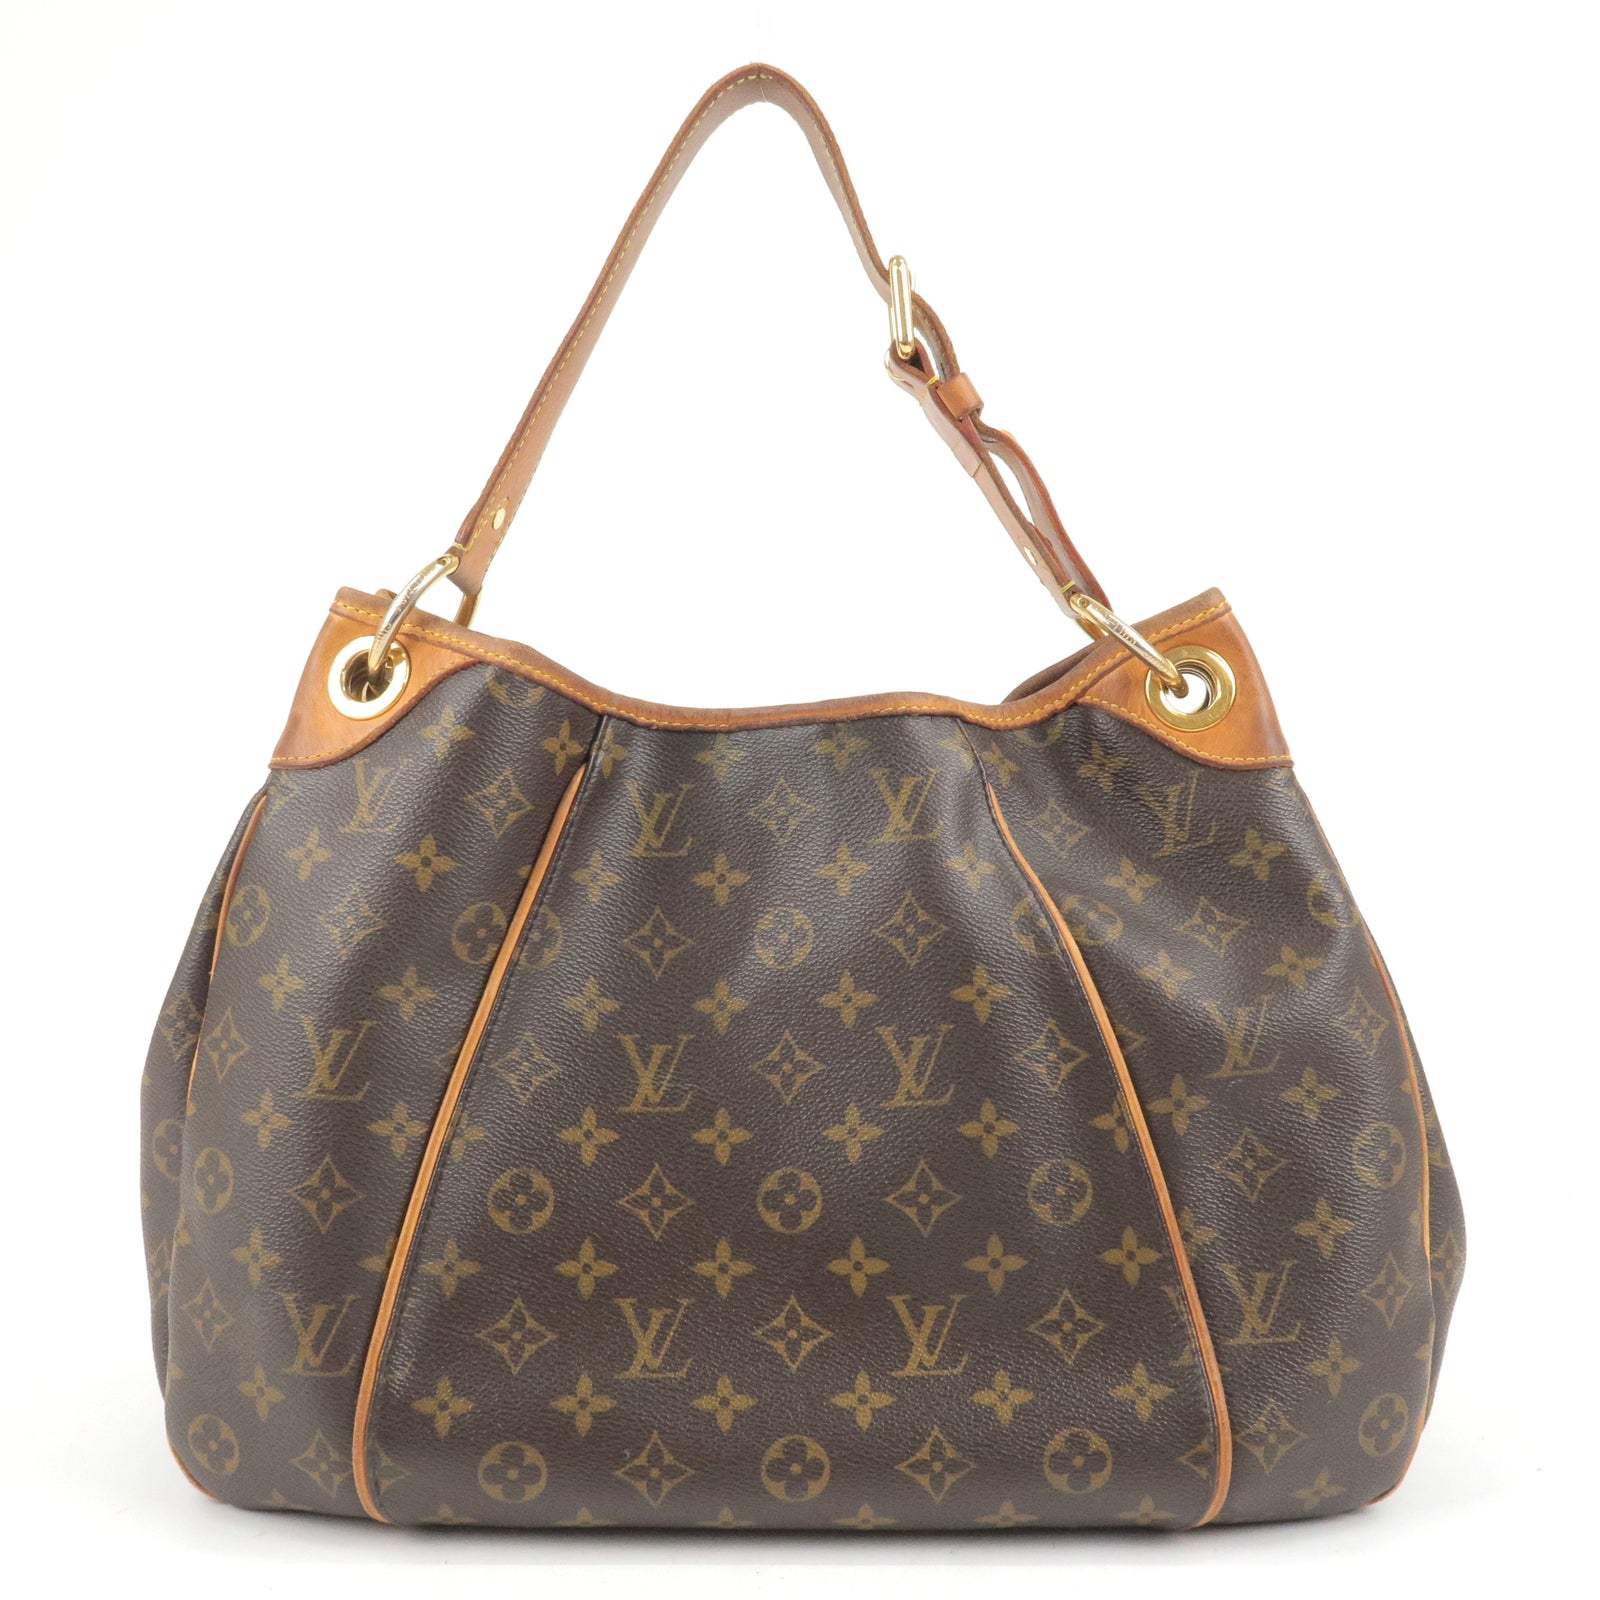 used Pre-owned Louis Vuitton Galliera PM Women's Shoulder Bag M56382 Monogram Brown (Fair), Adult Unisex, Size: (HxWxD): 30cm x 34cm x 12cm / 11.81